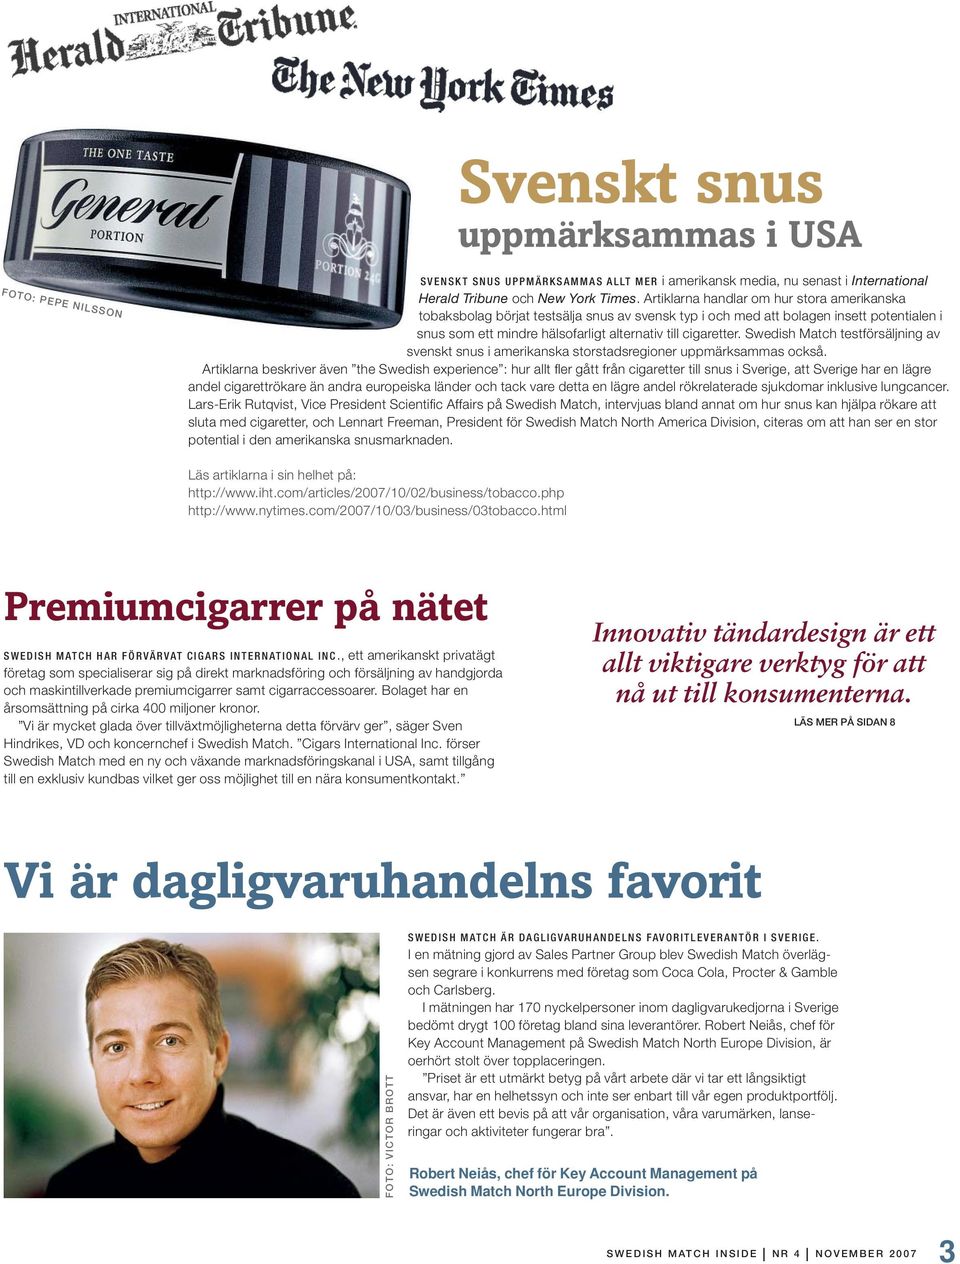 Swedish Match testförsäljning av svenskt snus i amerikanska storstadsregioner uppmärksammas också.